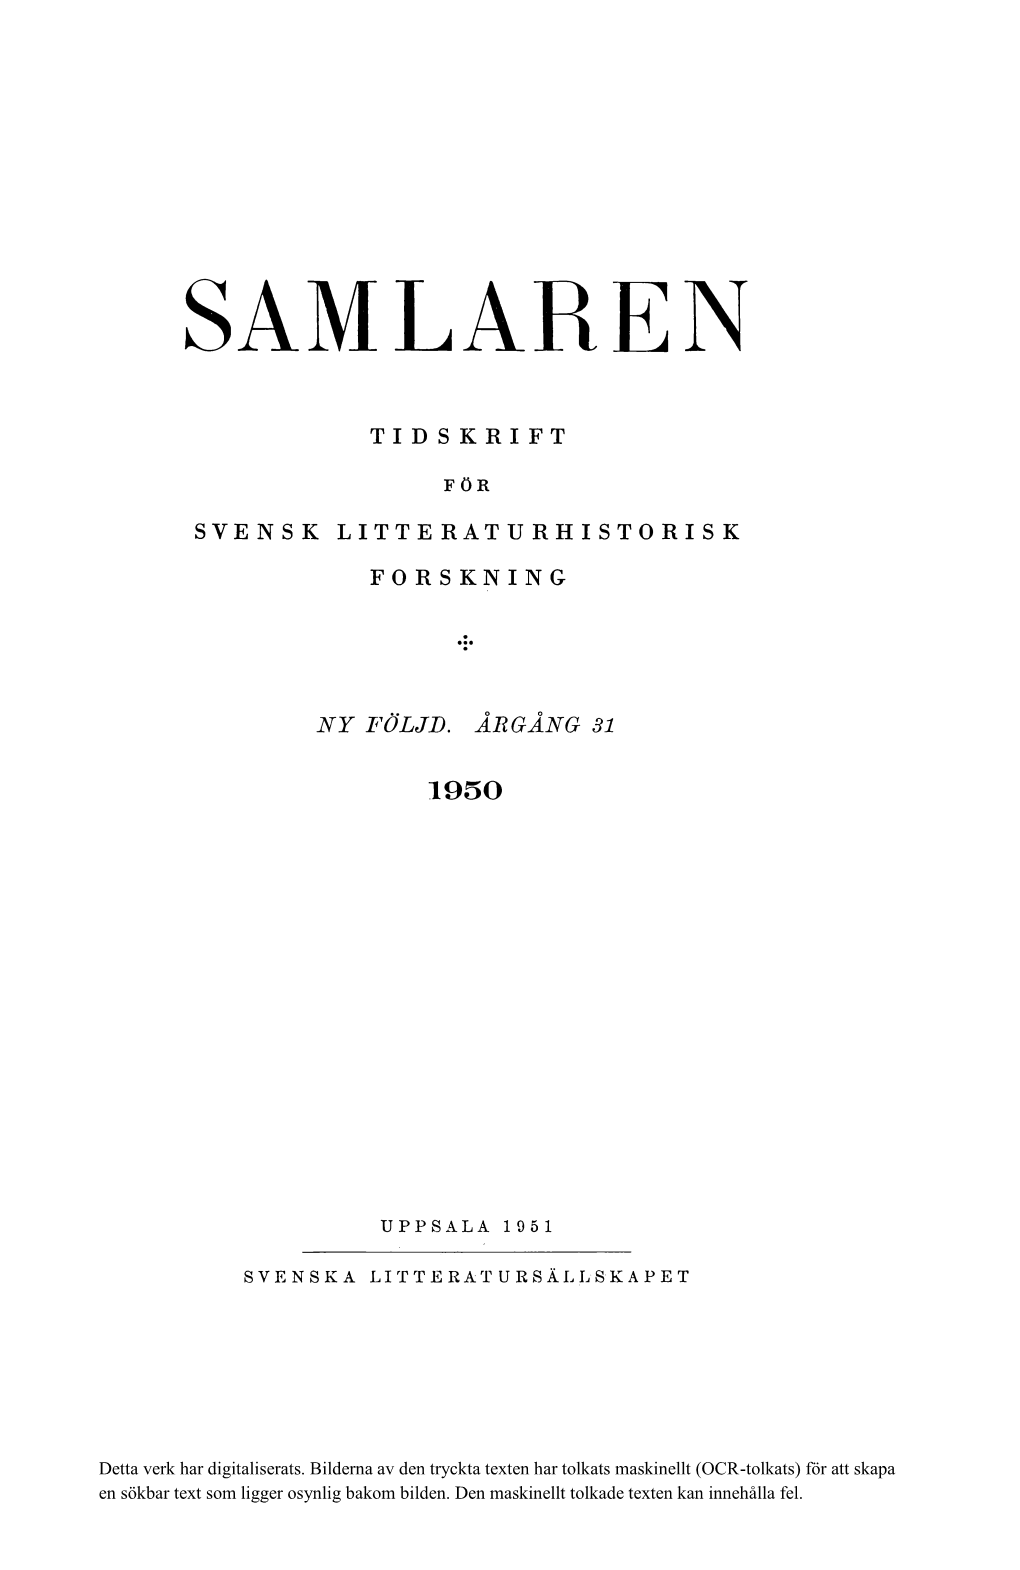 Svensk Litteraturhistorisk Bibliografi 67